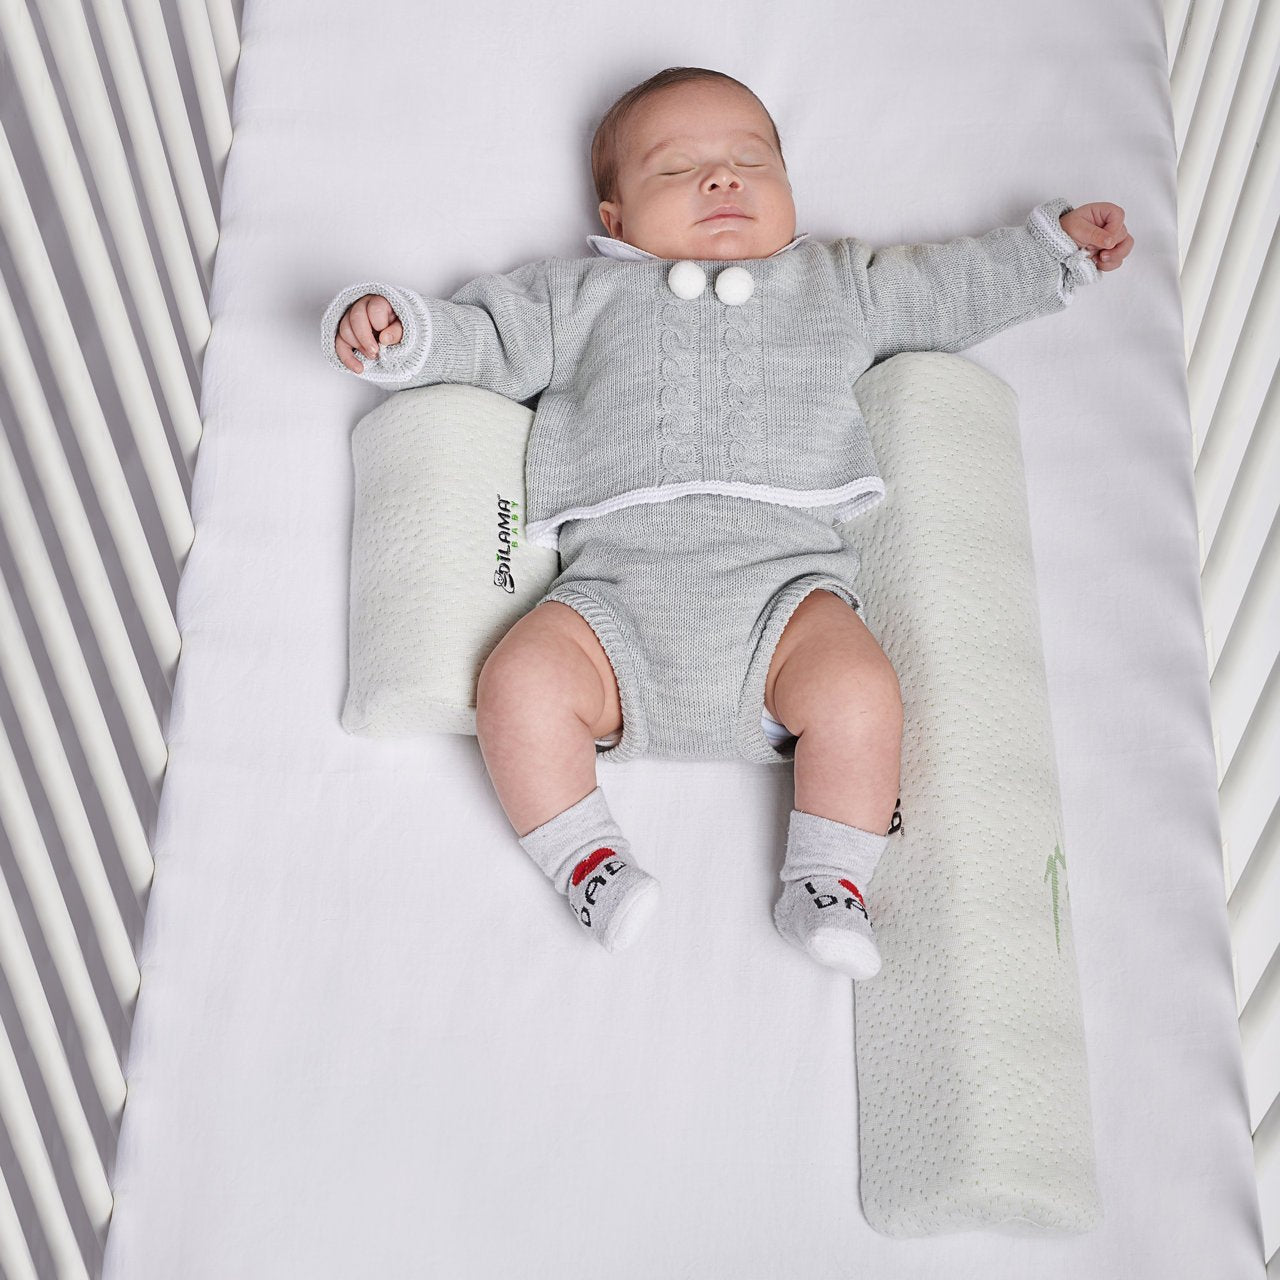 Cuscino per neonato: i consigli per scegliere quello giusto - fem